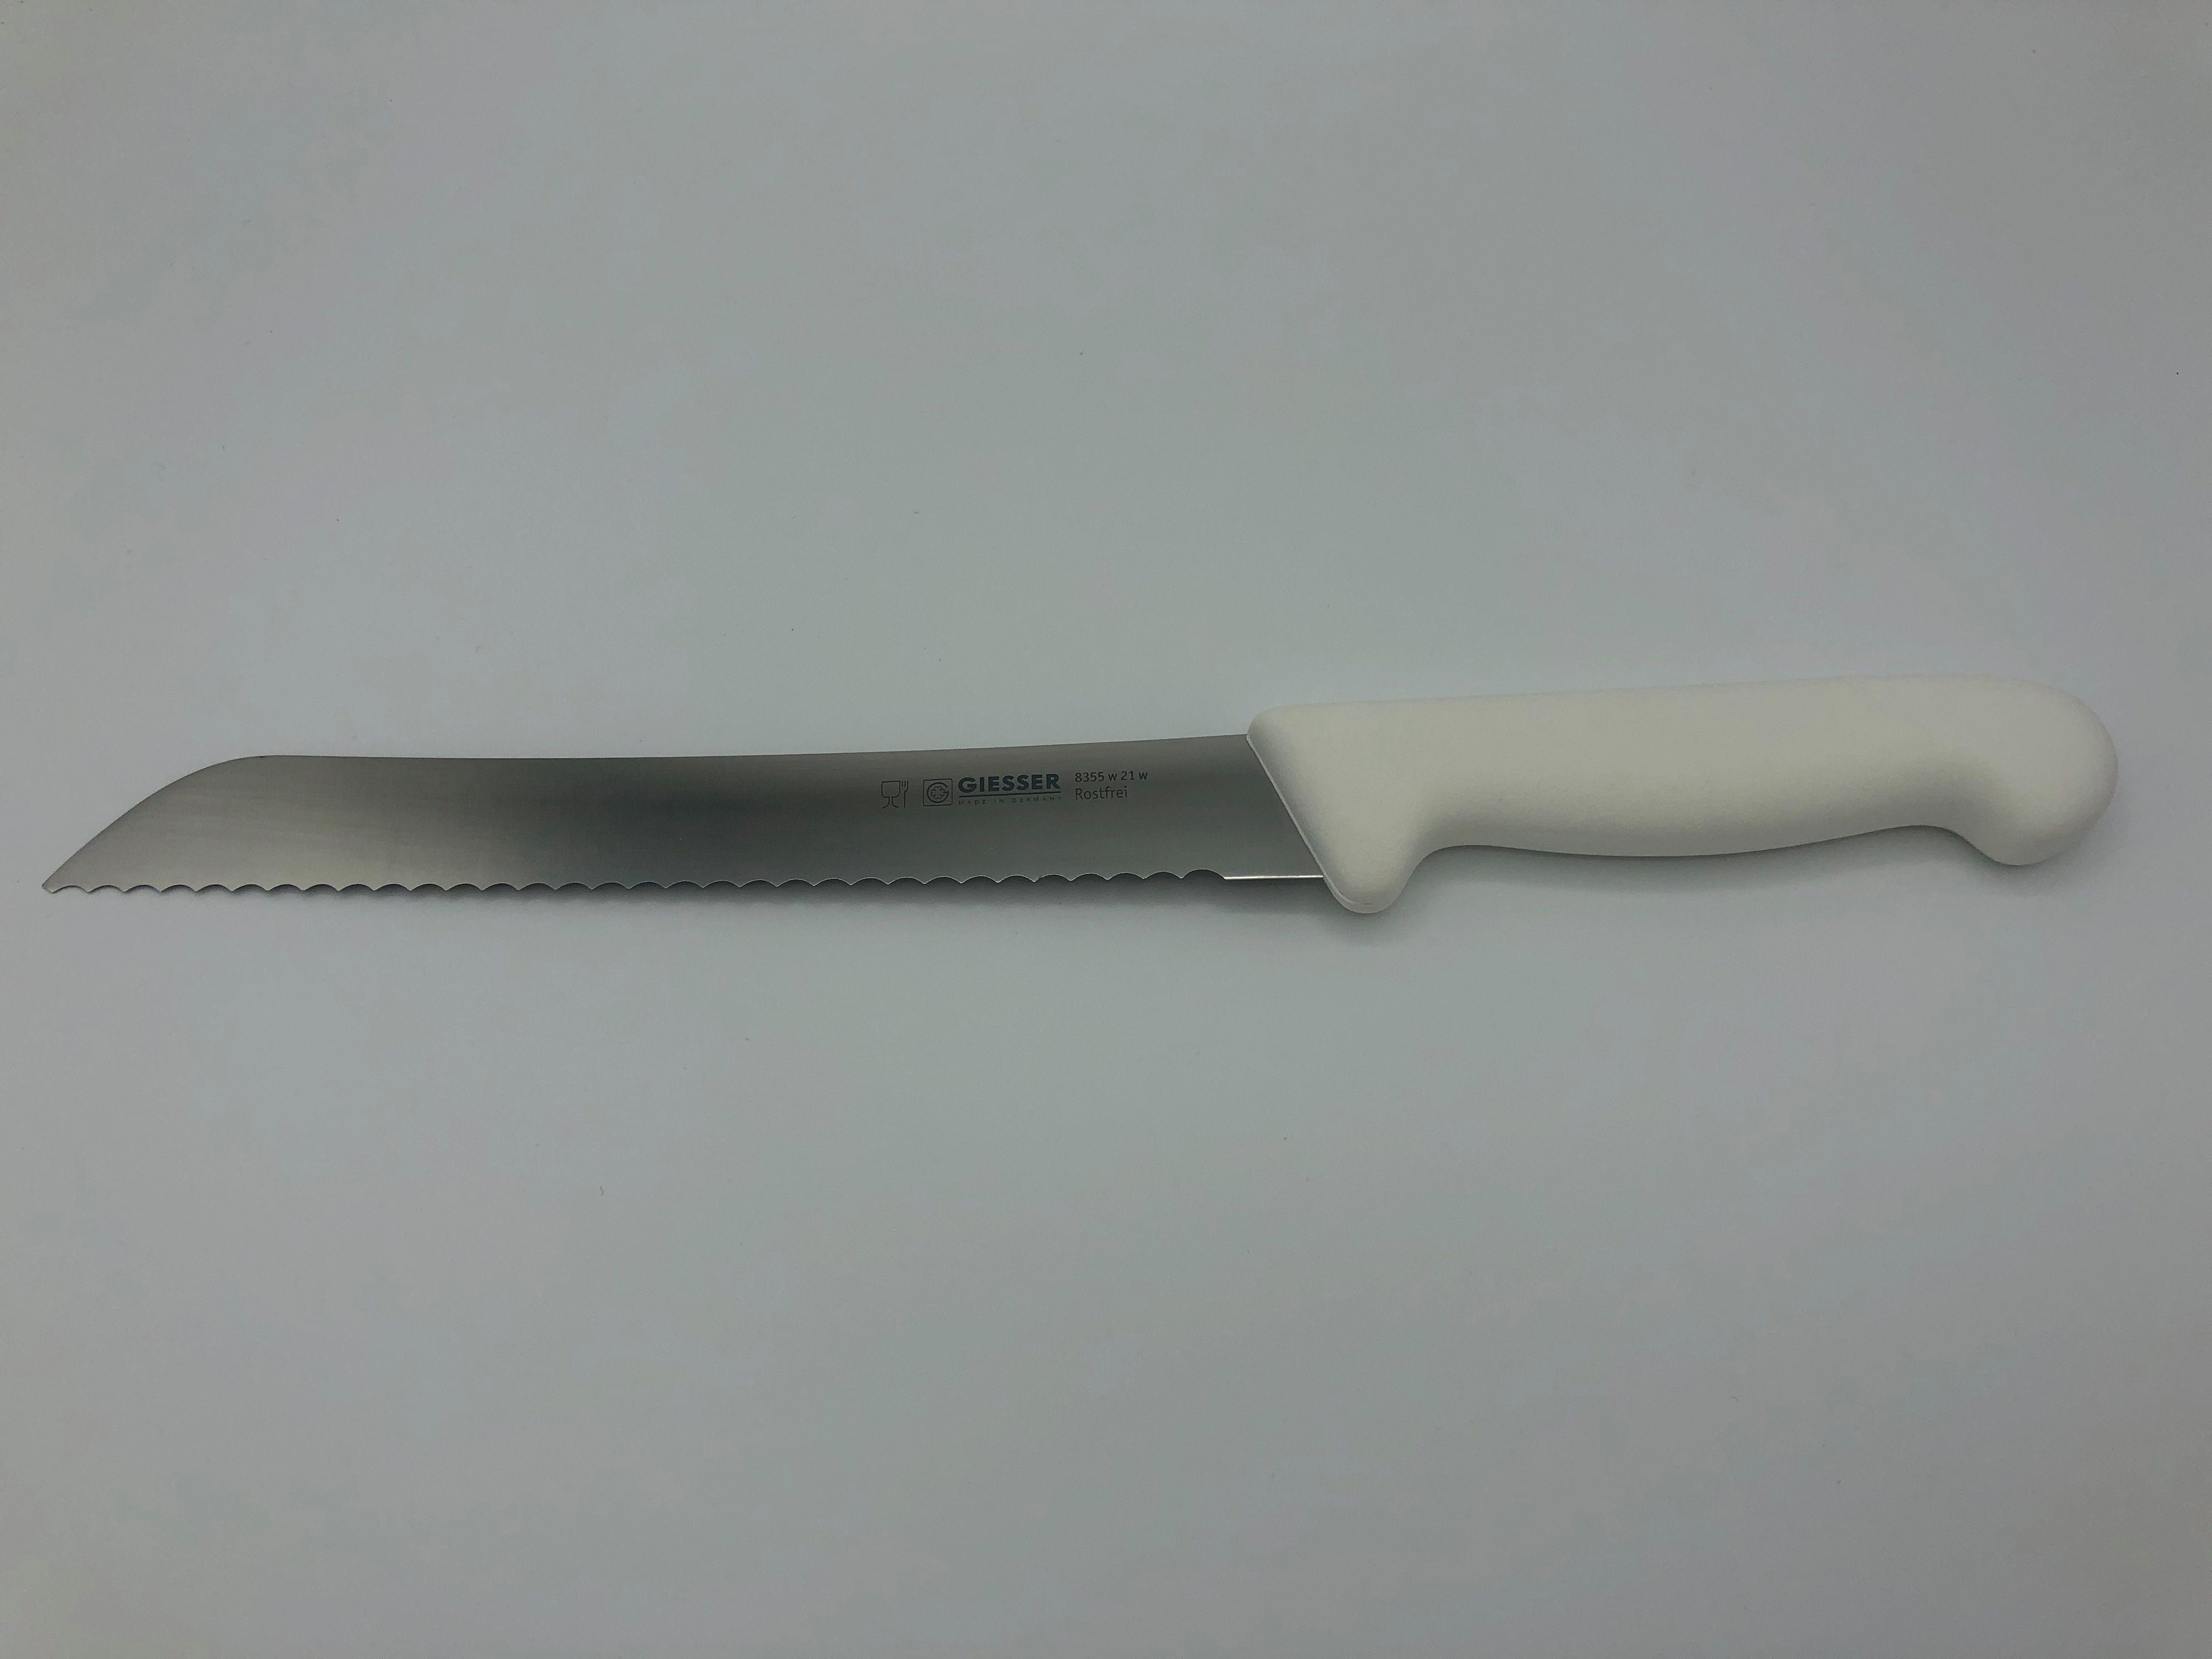 Giesser Messer Brotmesser Konditormesser 8355, Kunststoffgriff, 6 mm Welle, ideal zum Brot schneiden Weiß